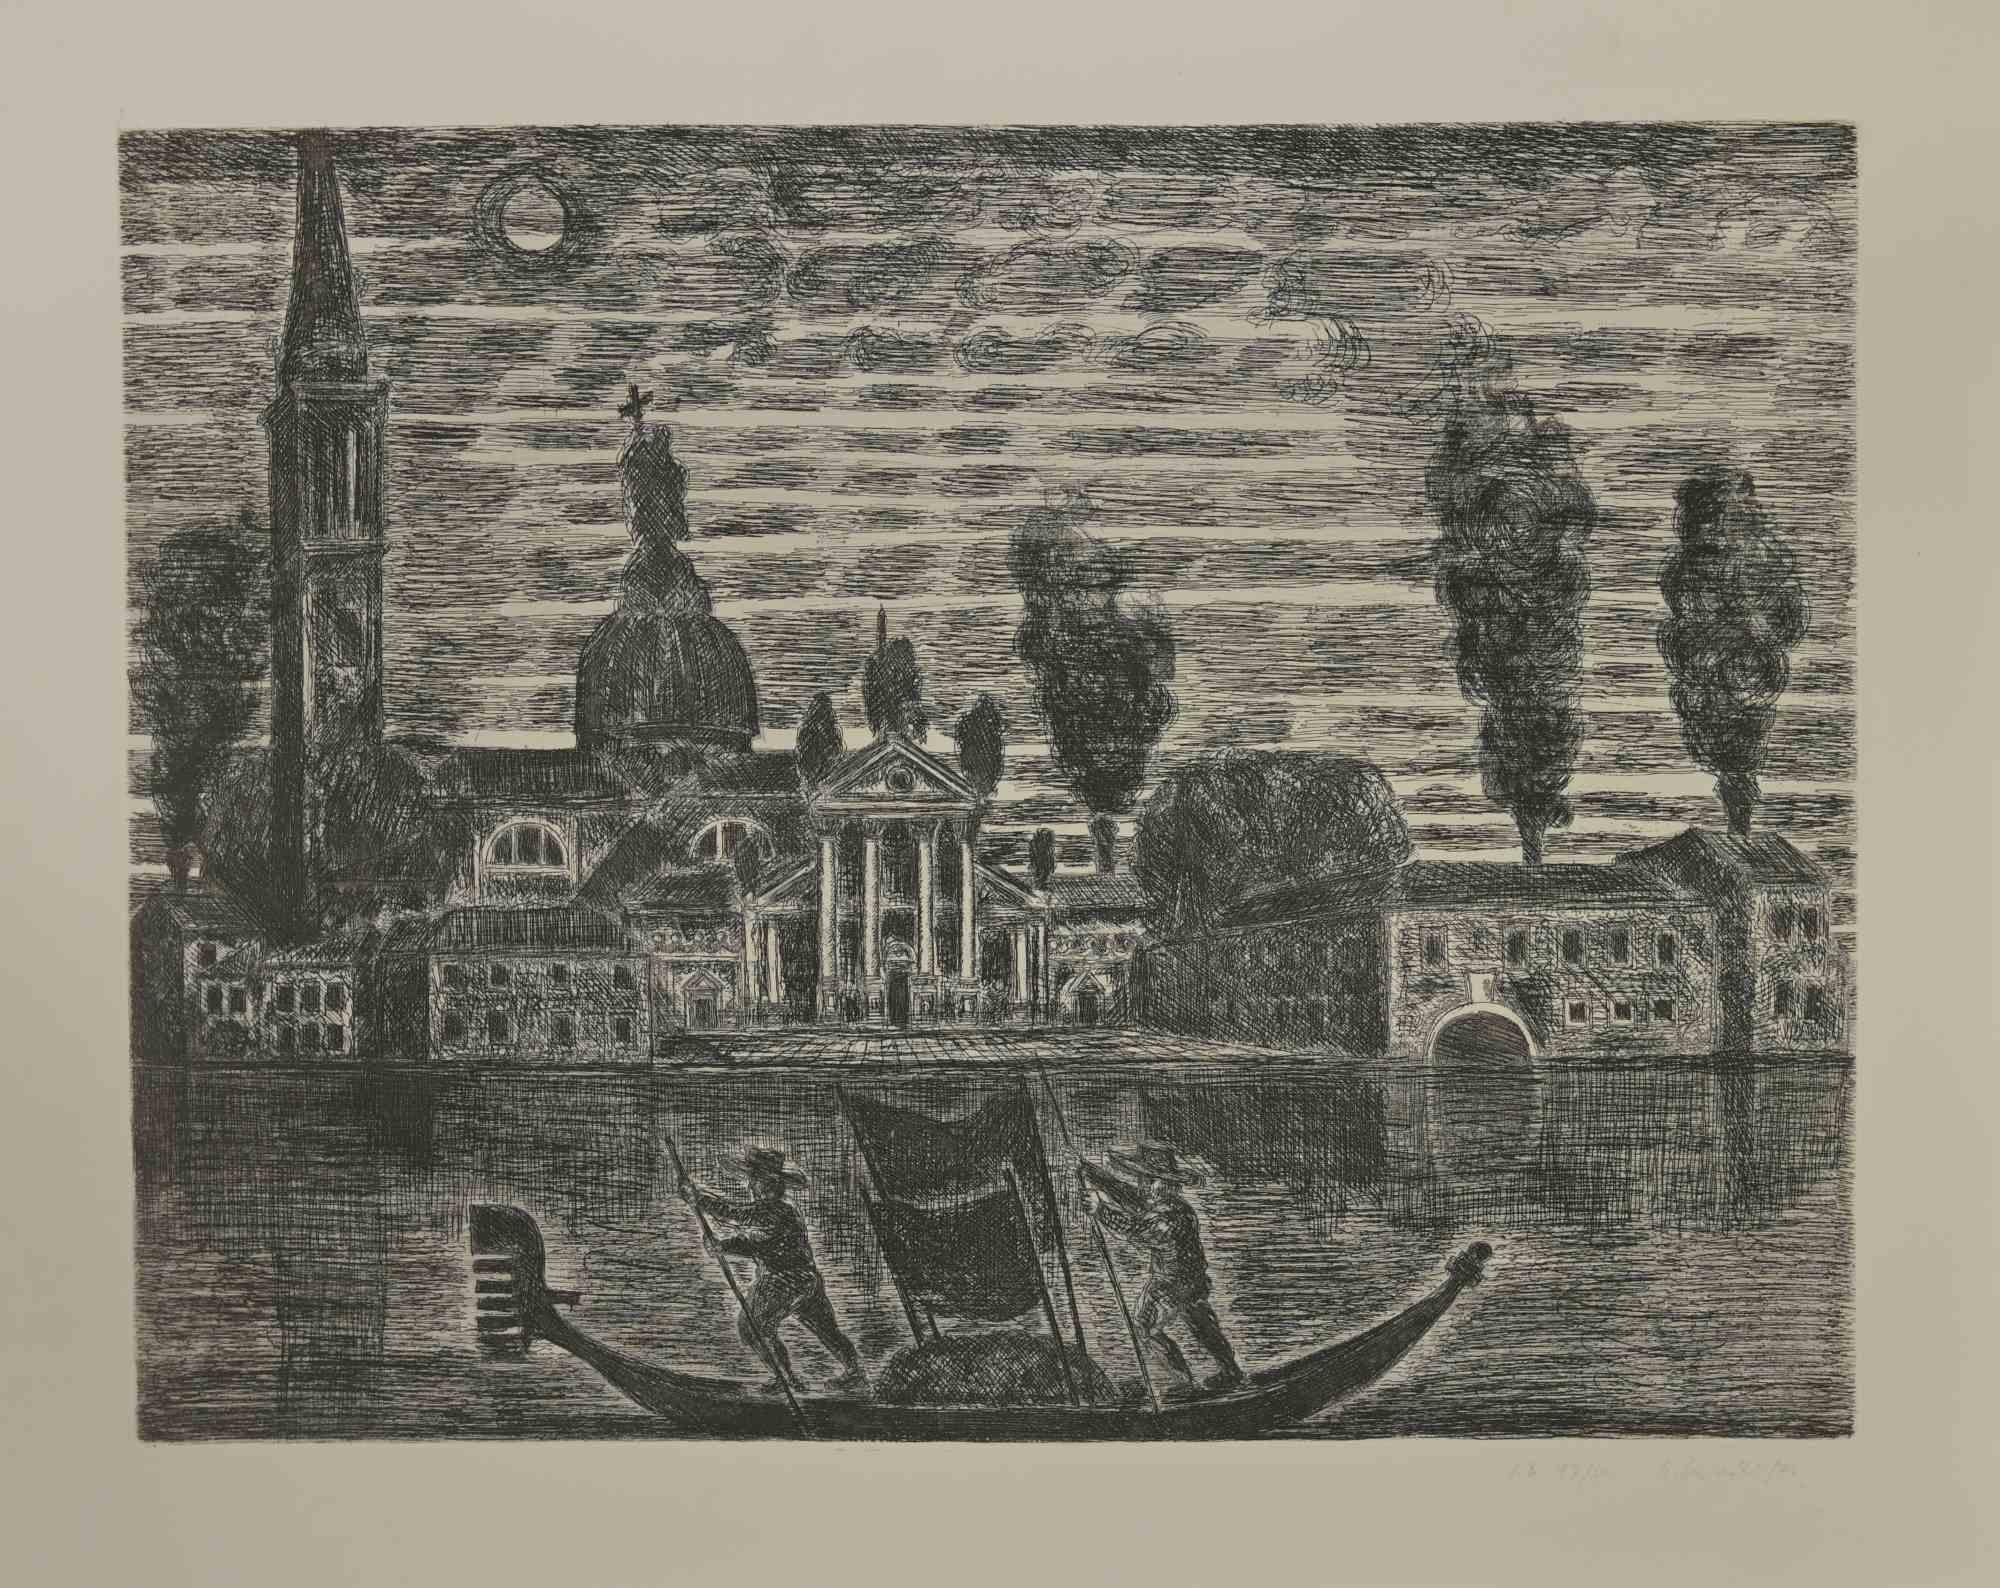 Gondoliers à Venise est une gravure réalisée par Gianpaolo Berto en 1974.

60 X 75 cm , sans cadre.

Édition 17/50. Numérotée et affermie par l'artiste dans la marge inférieure.

Bonnes conditions.

 

Gianpaolo Berto (1940) est né et a grandi dans